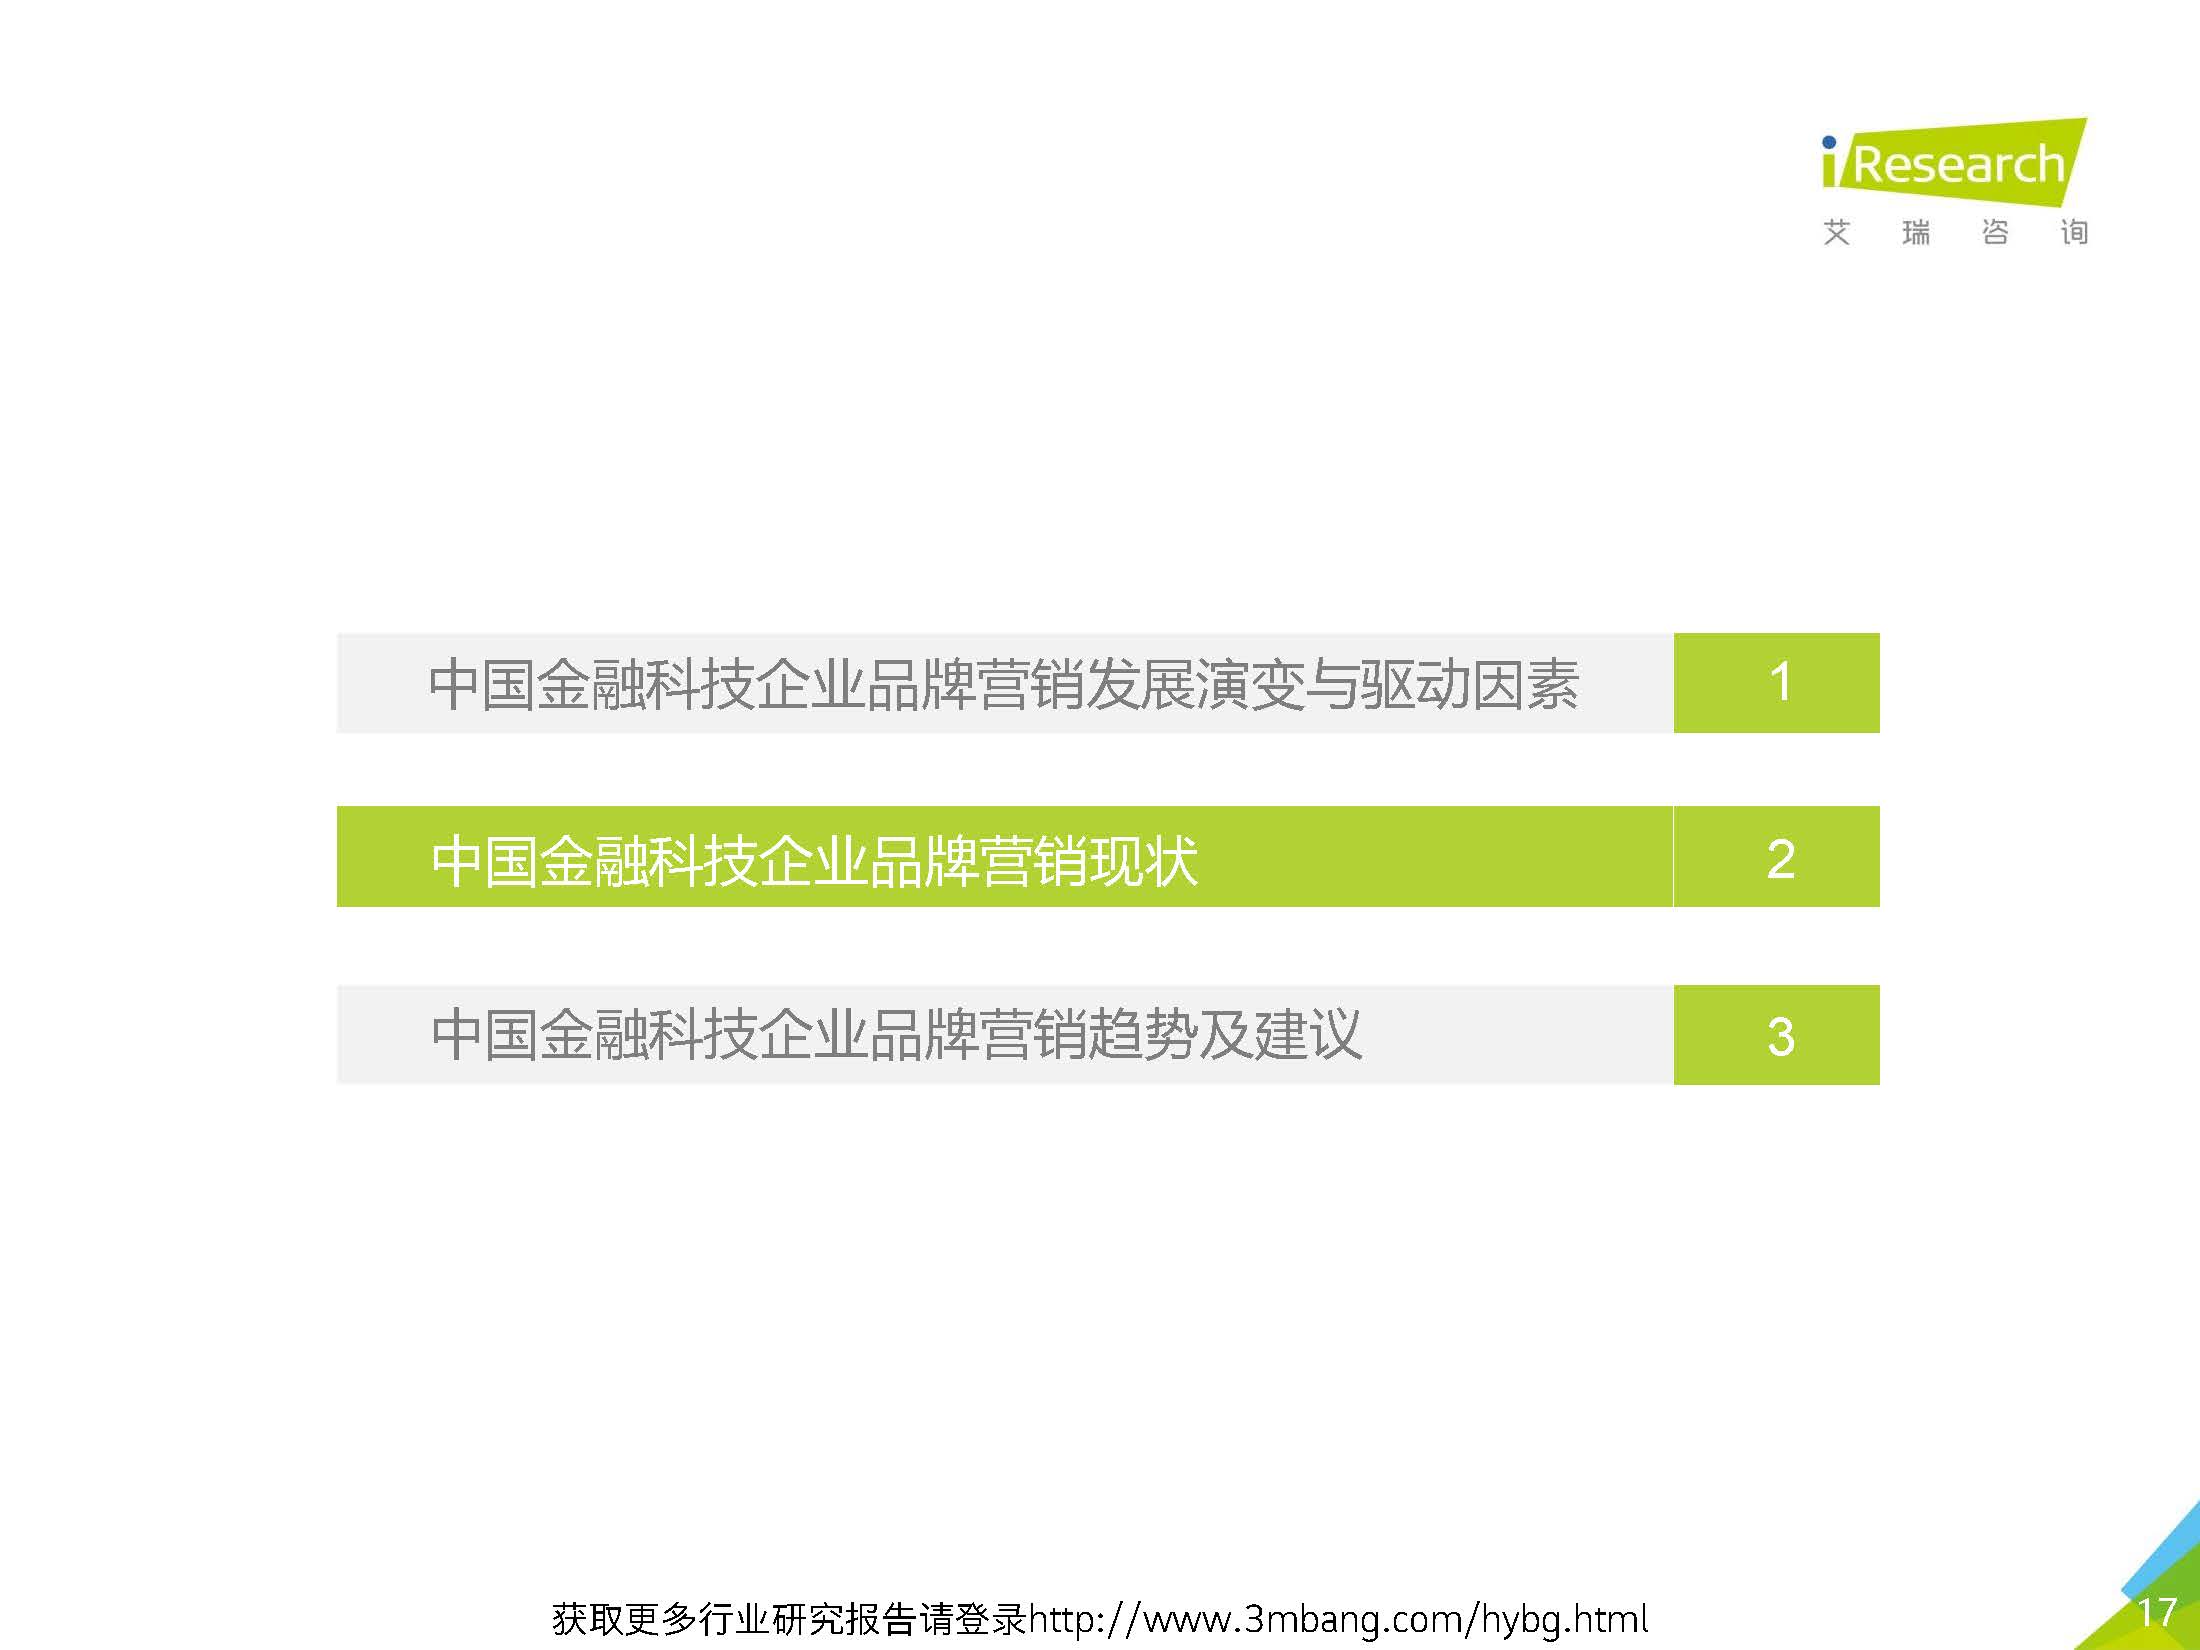 艾瑞：2019年-静待惊蛰-中国金融科技企业品牌营销研究报告(37页)_页面_17.jpg